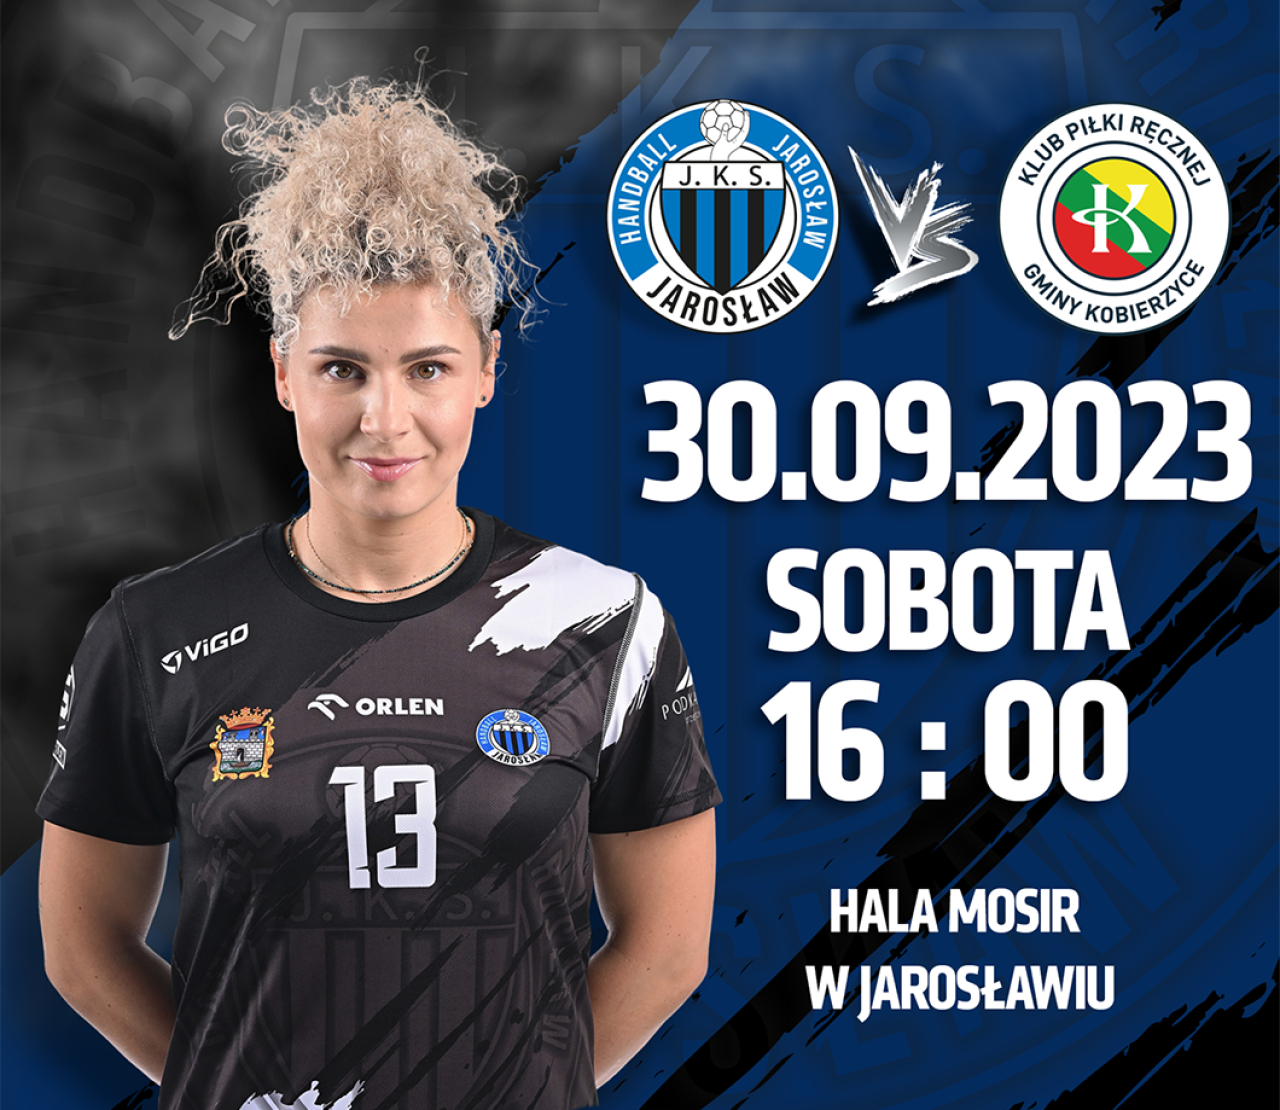 30.09: Handball JKS Jarosław - KPR Kobierzyce